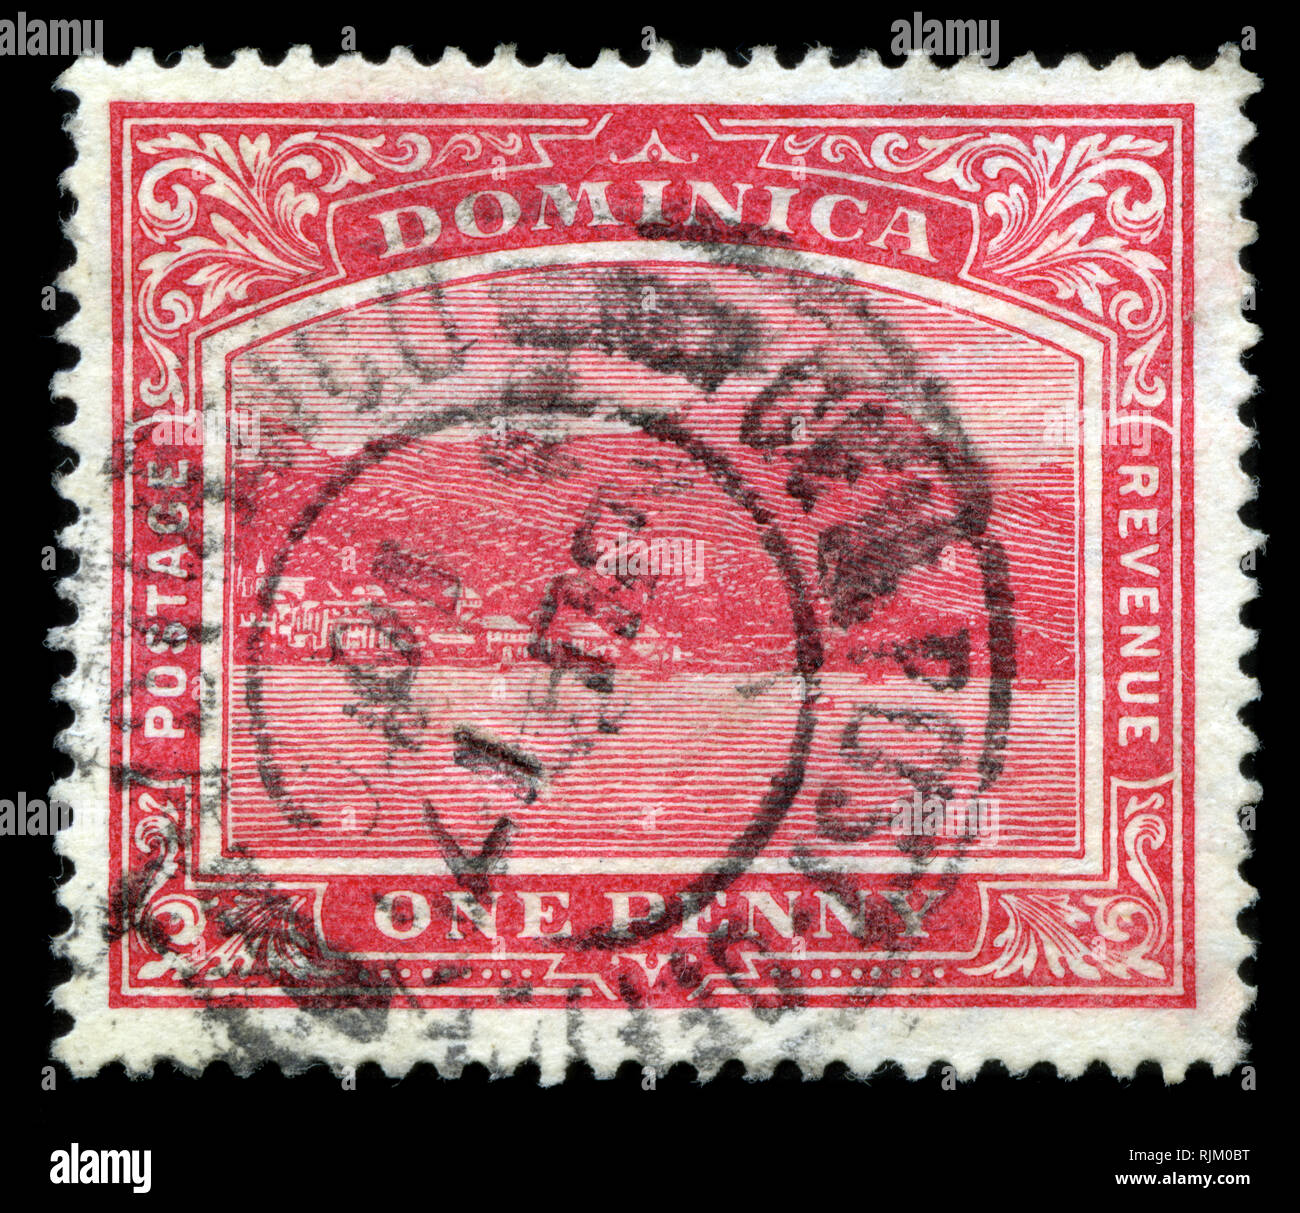 Francobollo da Dominica in Dominica serie di francobolli emessi nel 1921 Foto Stock